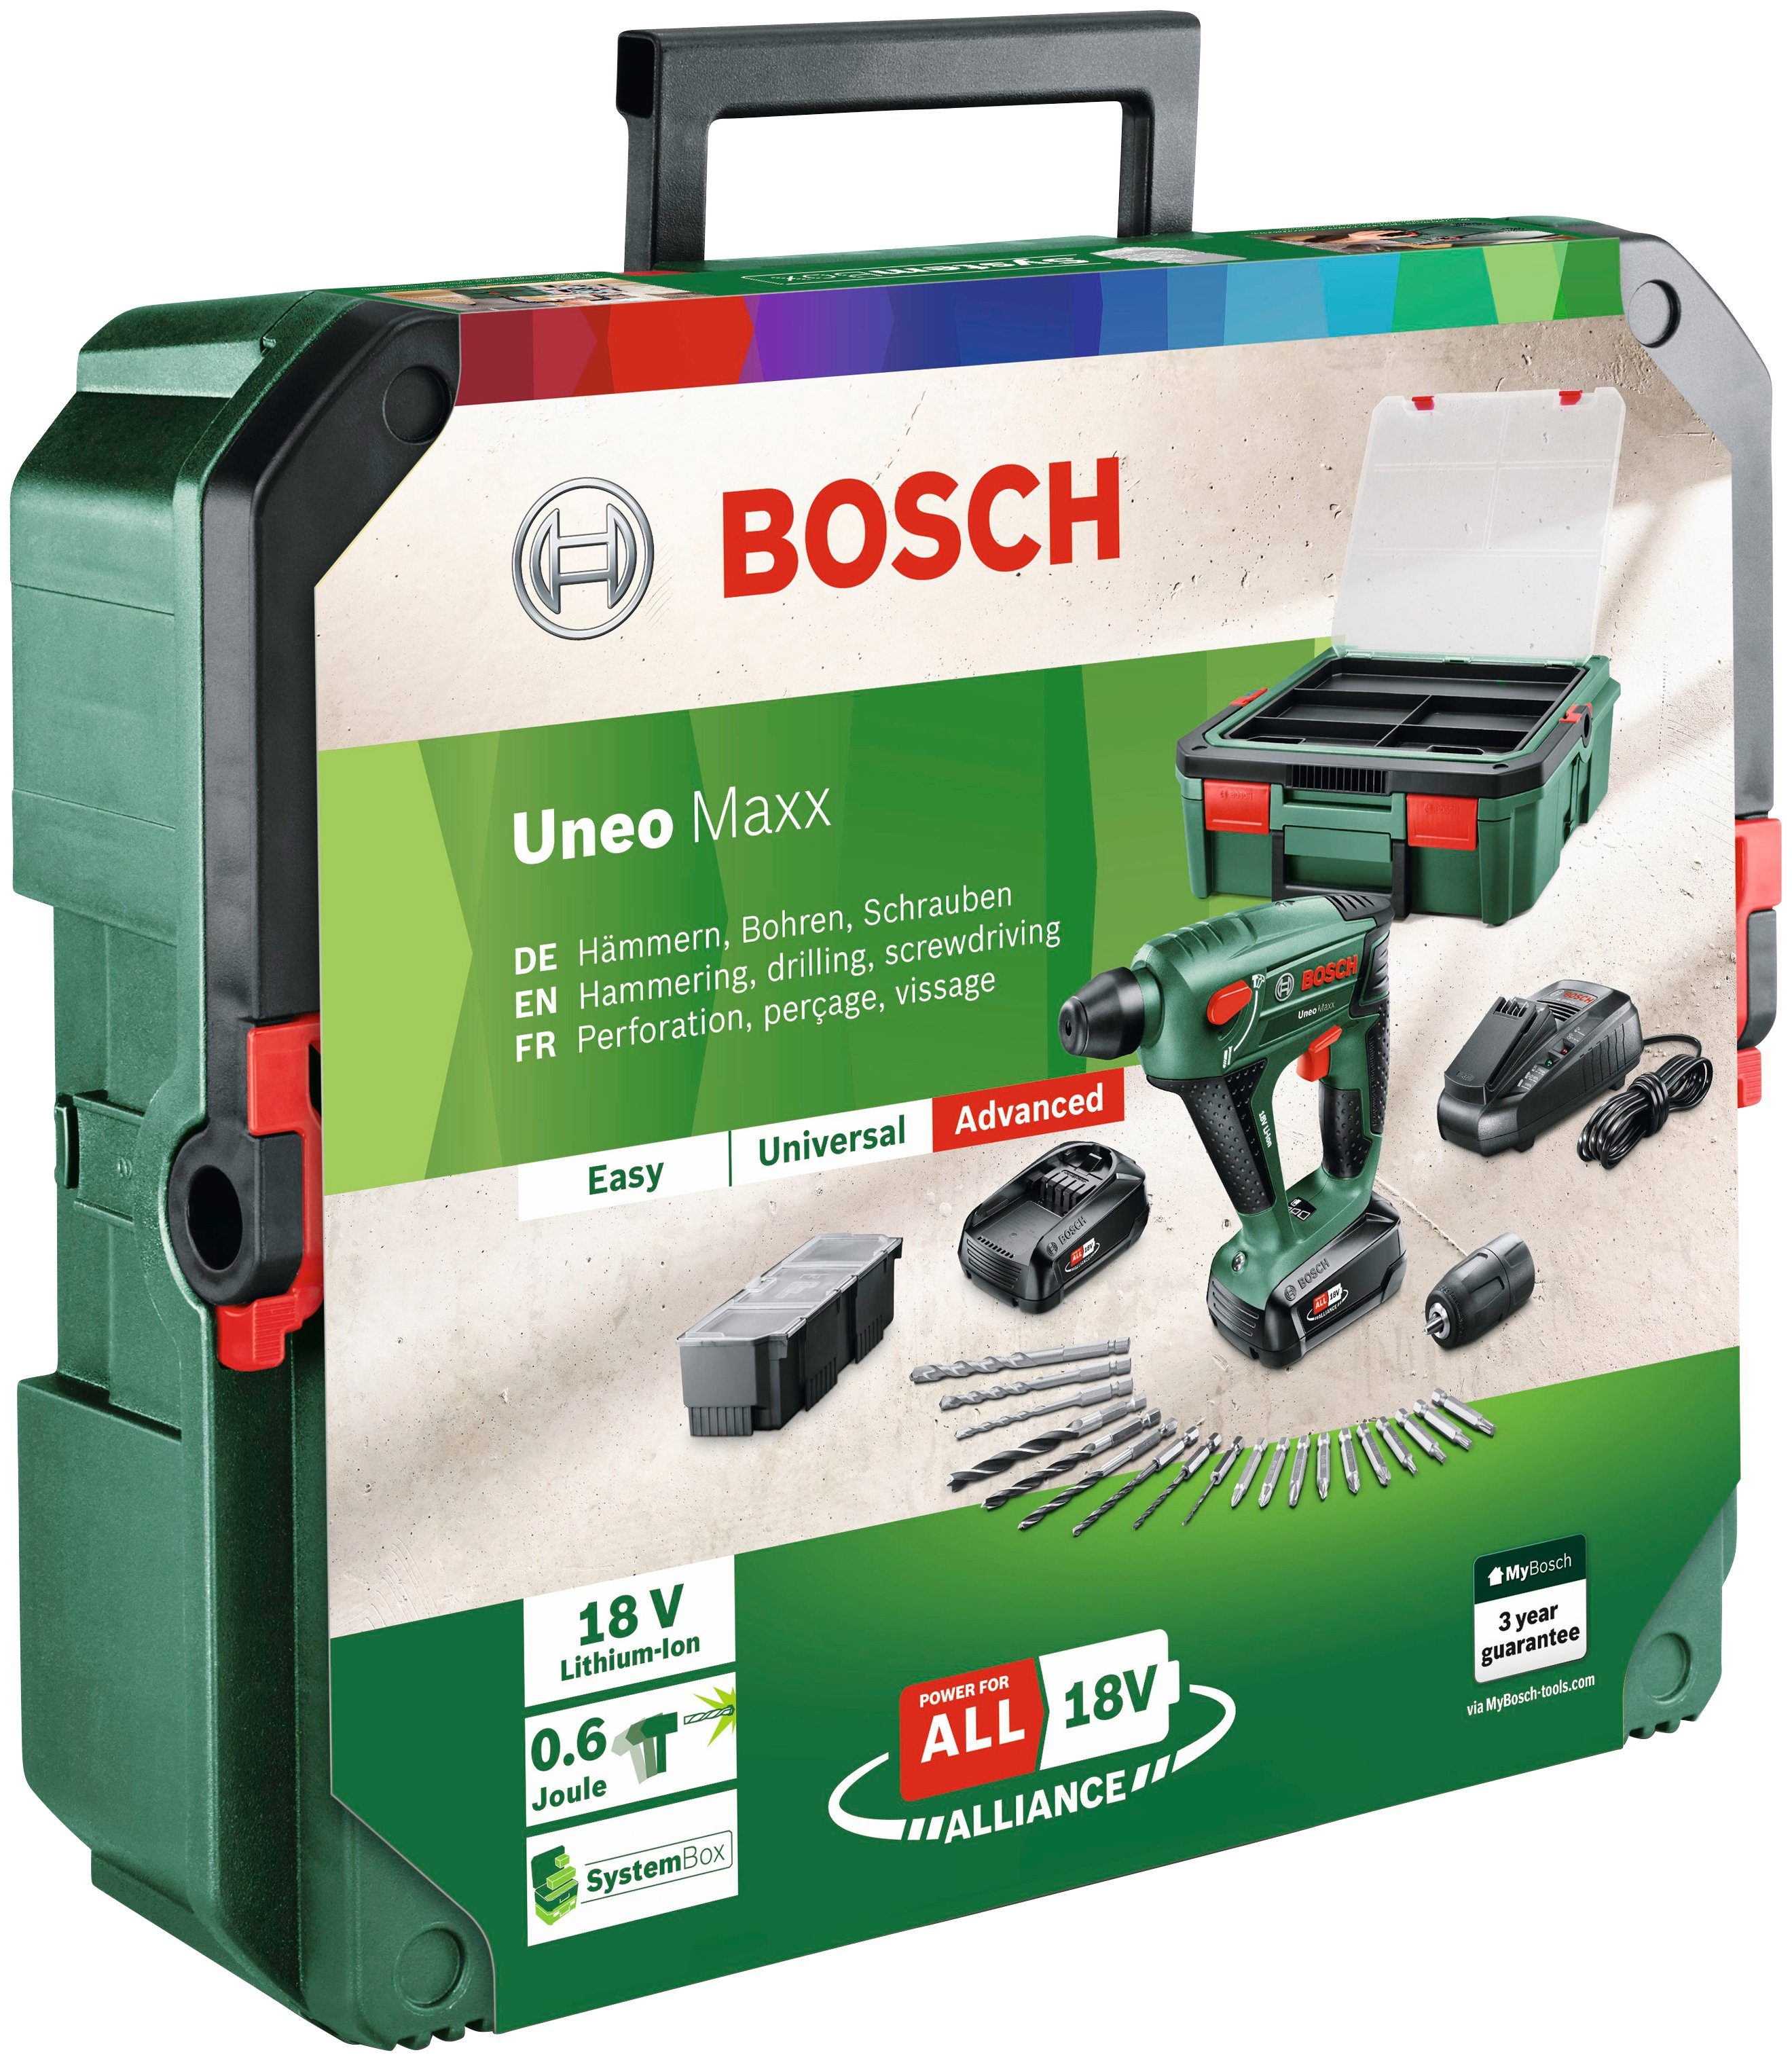 2 + mit Garden Maxx & Ladegerät und Akkus Bosch Home Akku-Bohrhammer SystemBox, Uneo